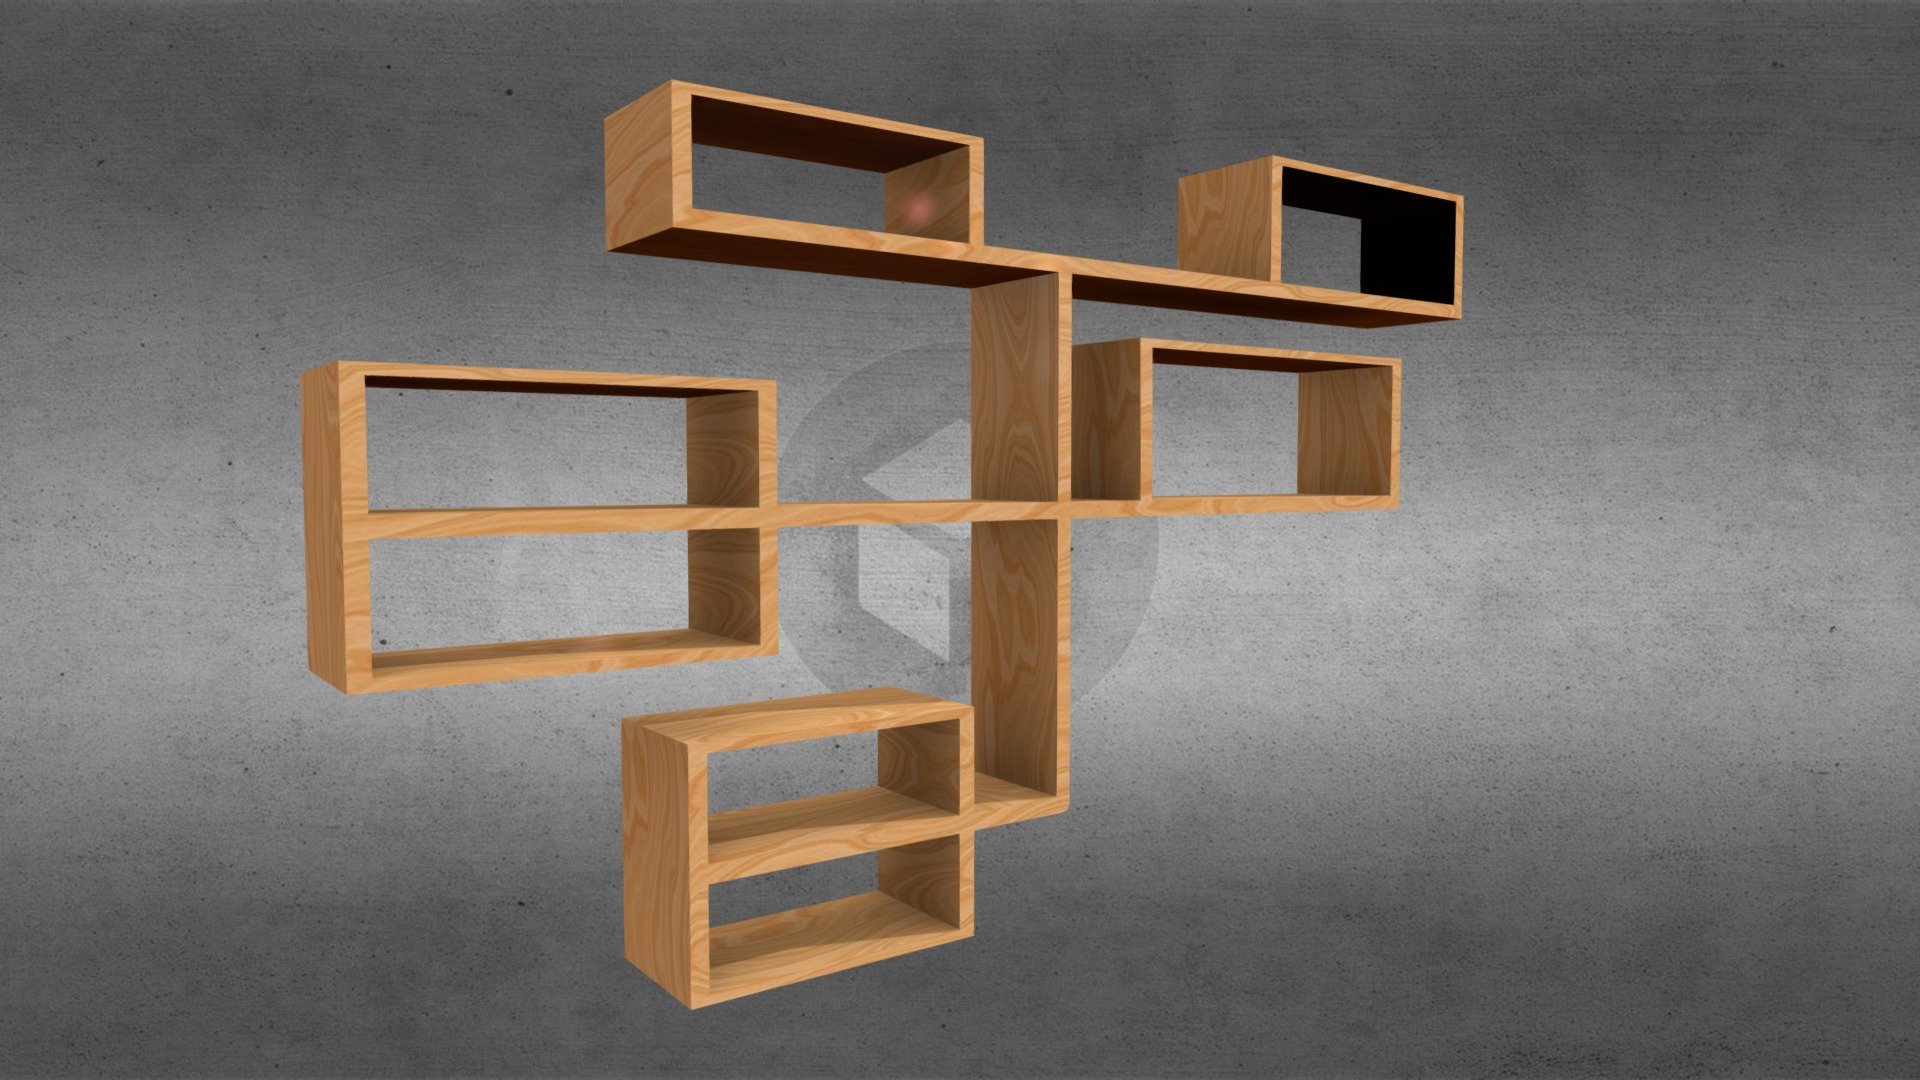 Lowpoly bookshelf - Bookshelf - Download Free 3D model by igor-tkachenko 3d model